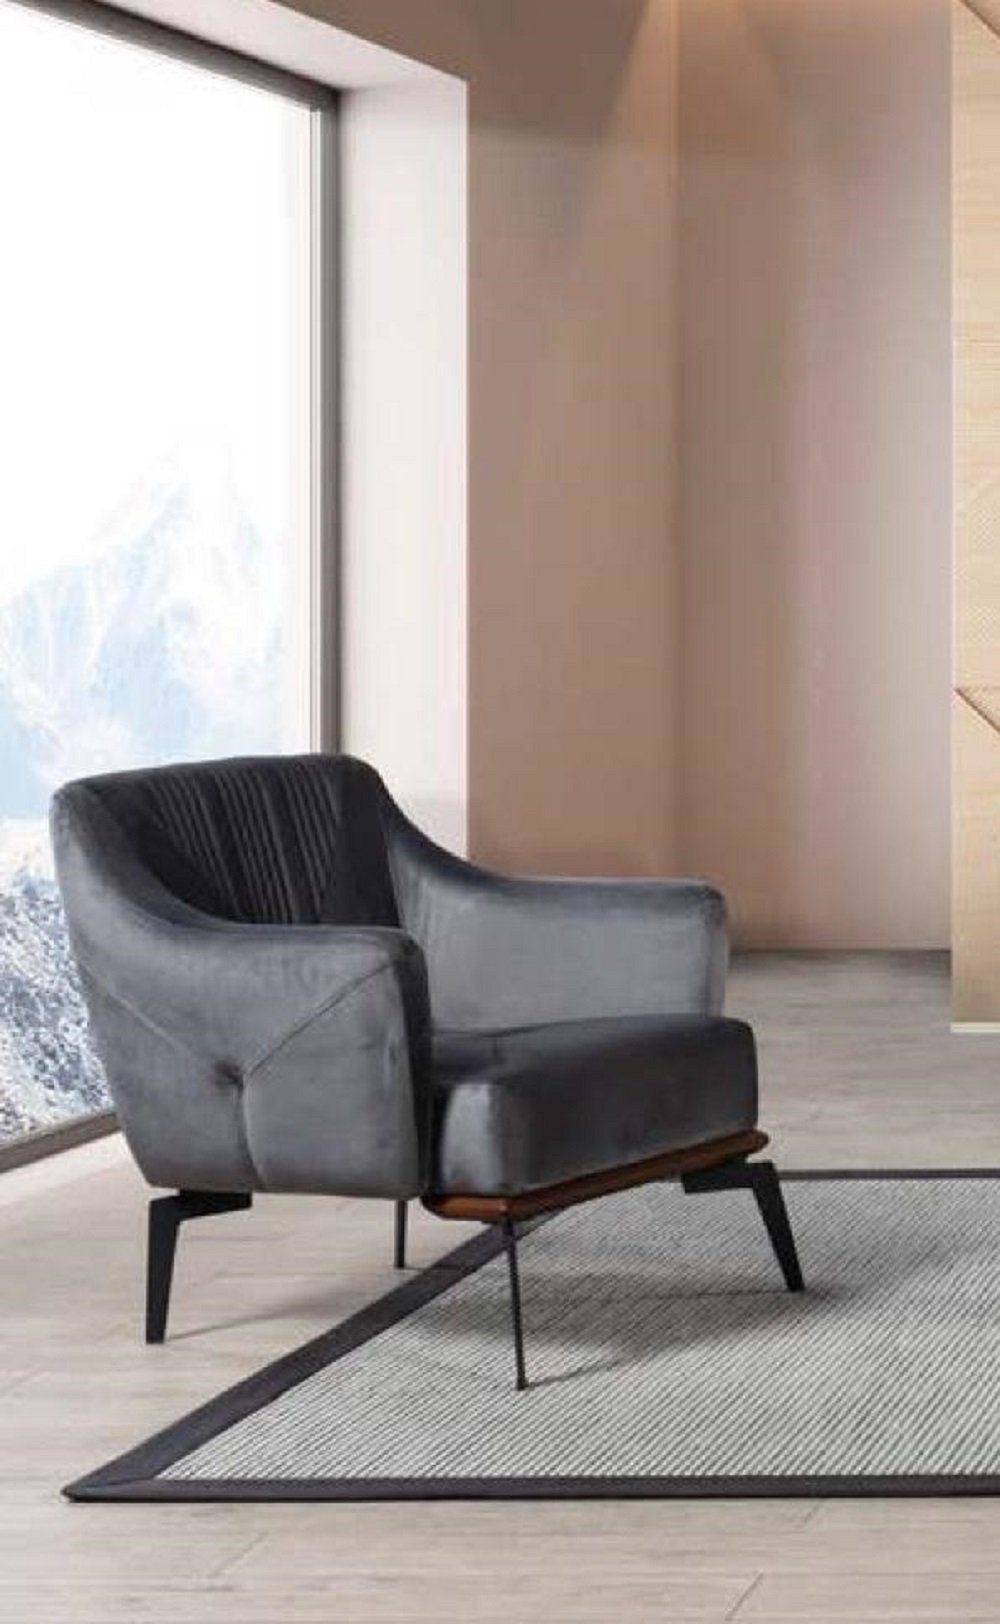 JVmoebel Sessel Luxus Sessel Polster Möbel Wohnzimmer Einsitzer Sessel Grau Textil Neu